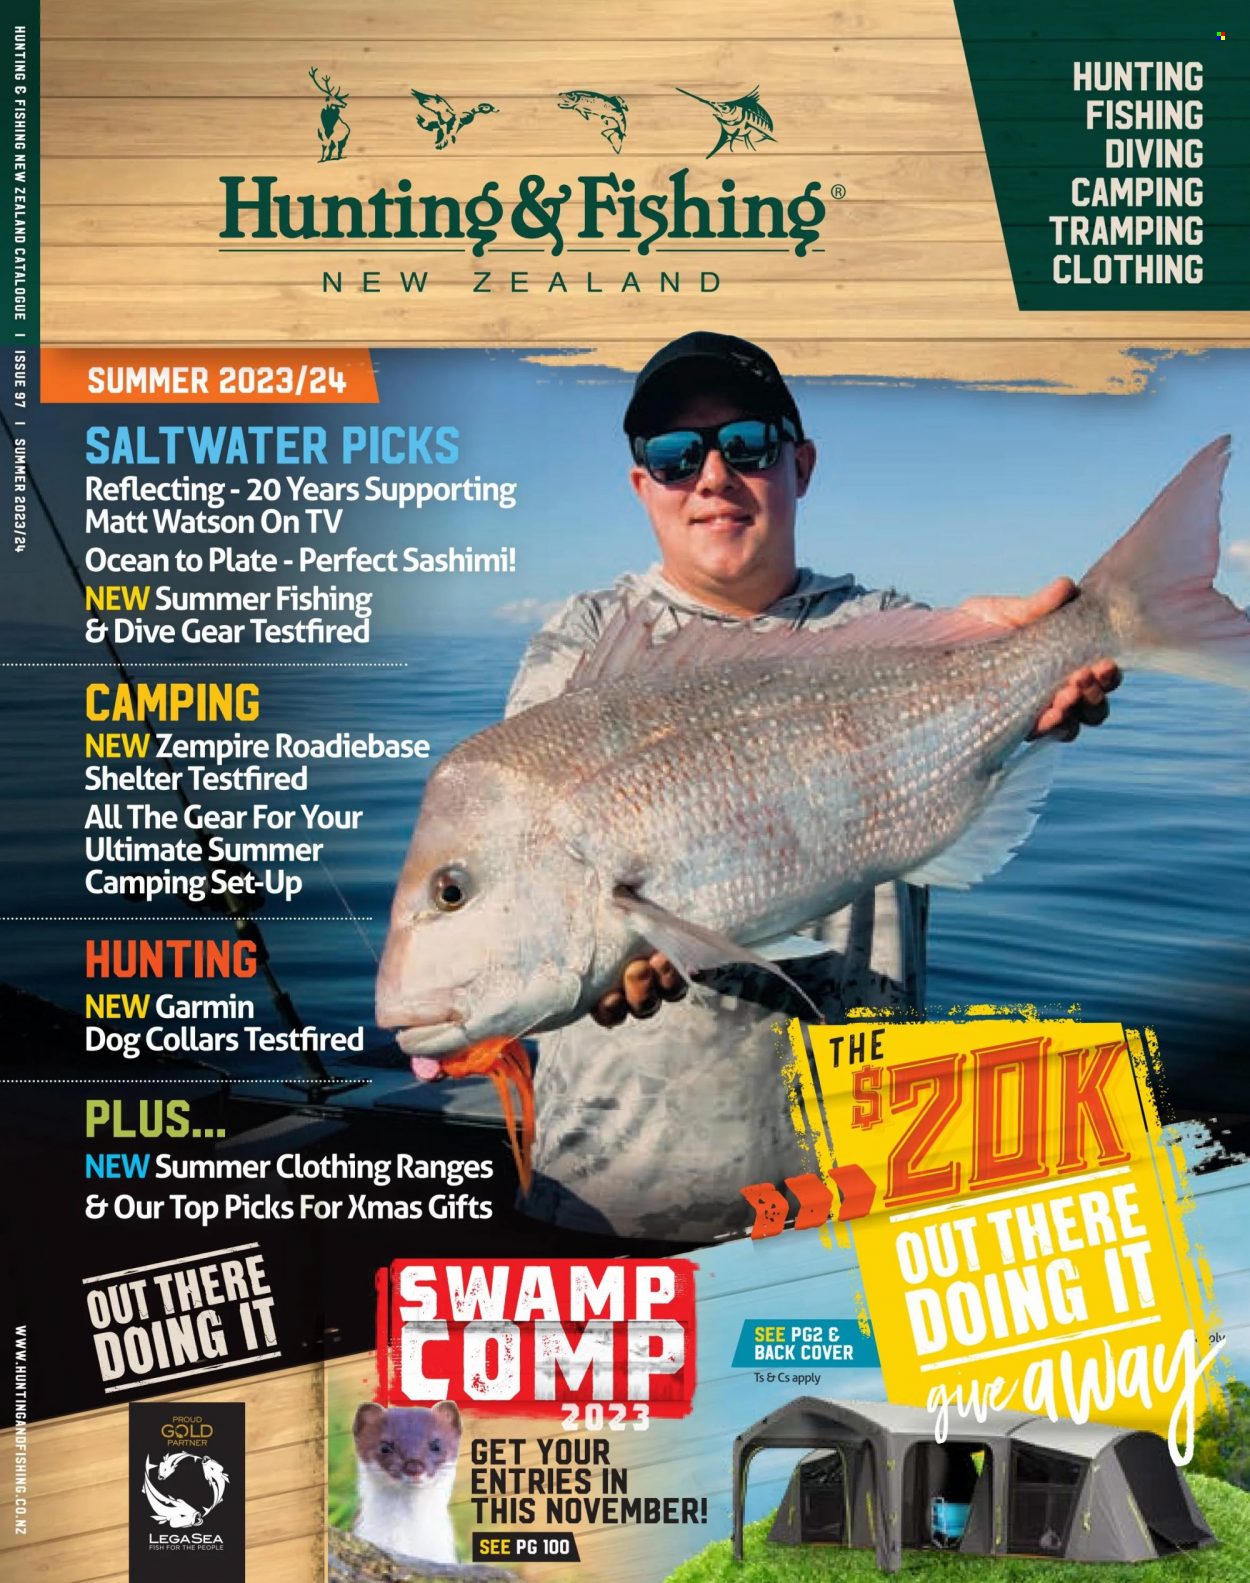 Hunting & Fishing catalogue .